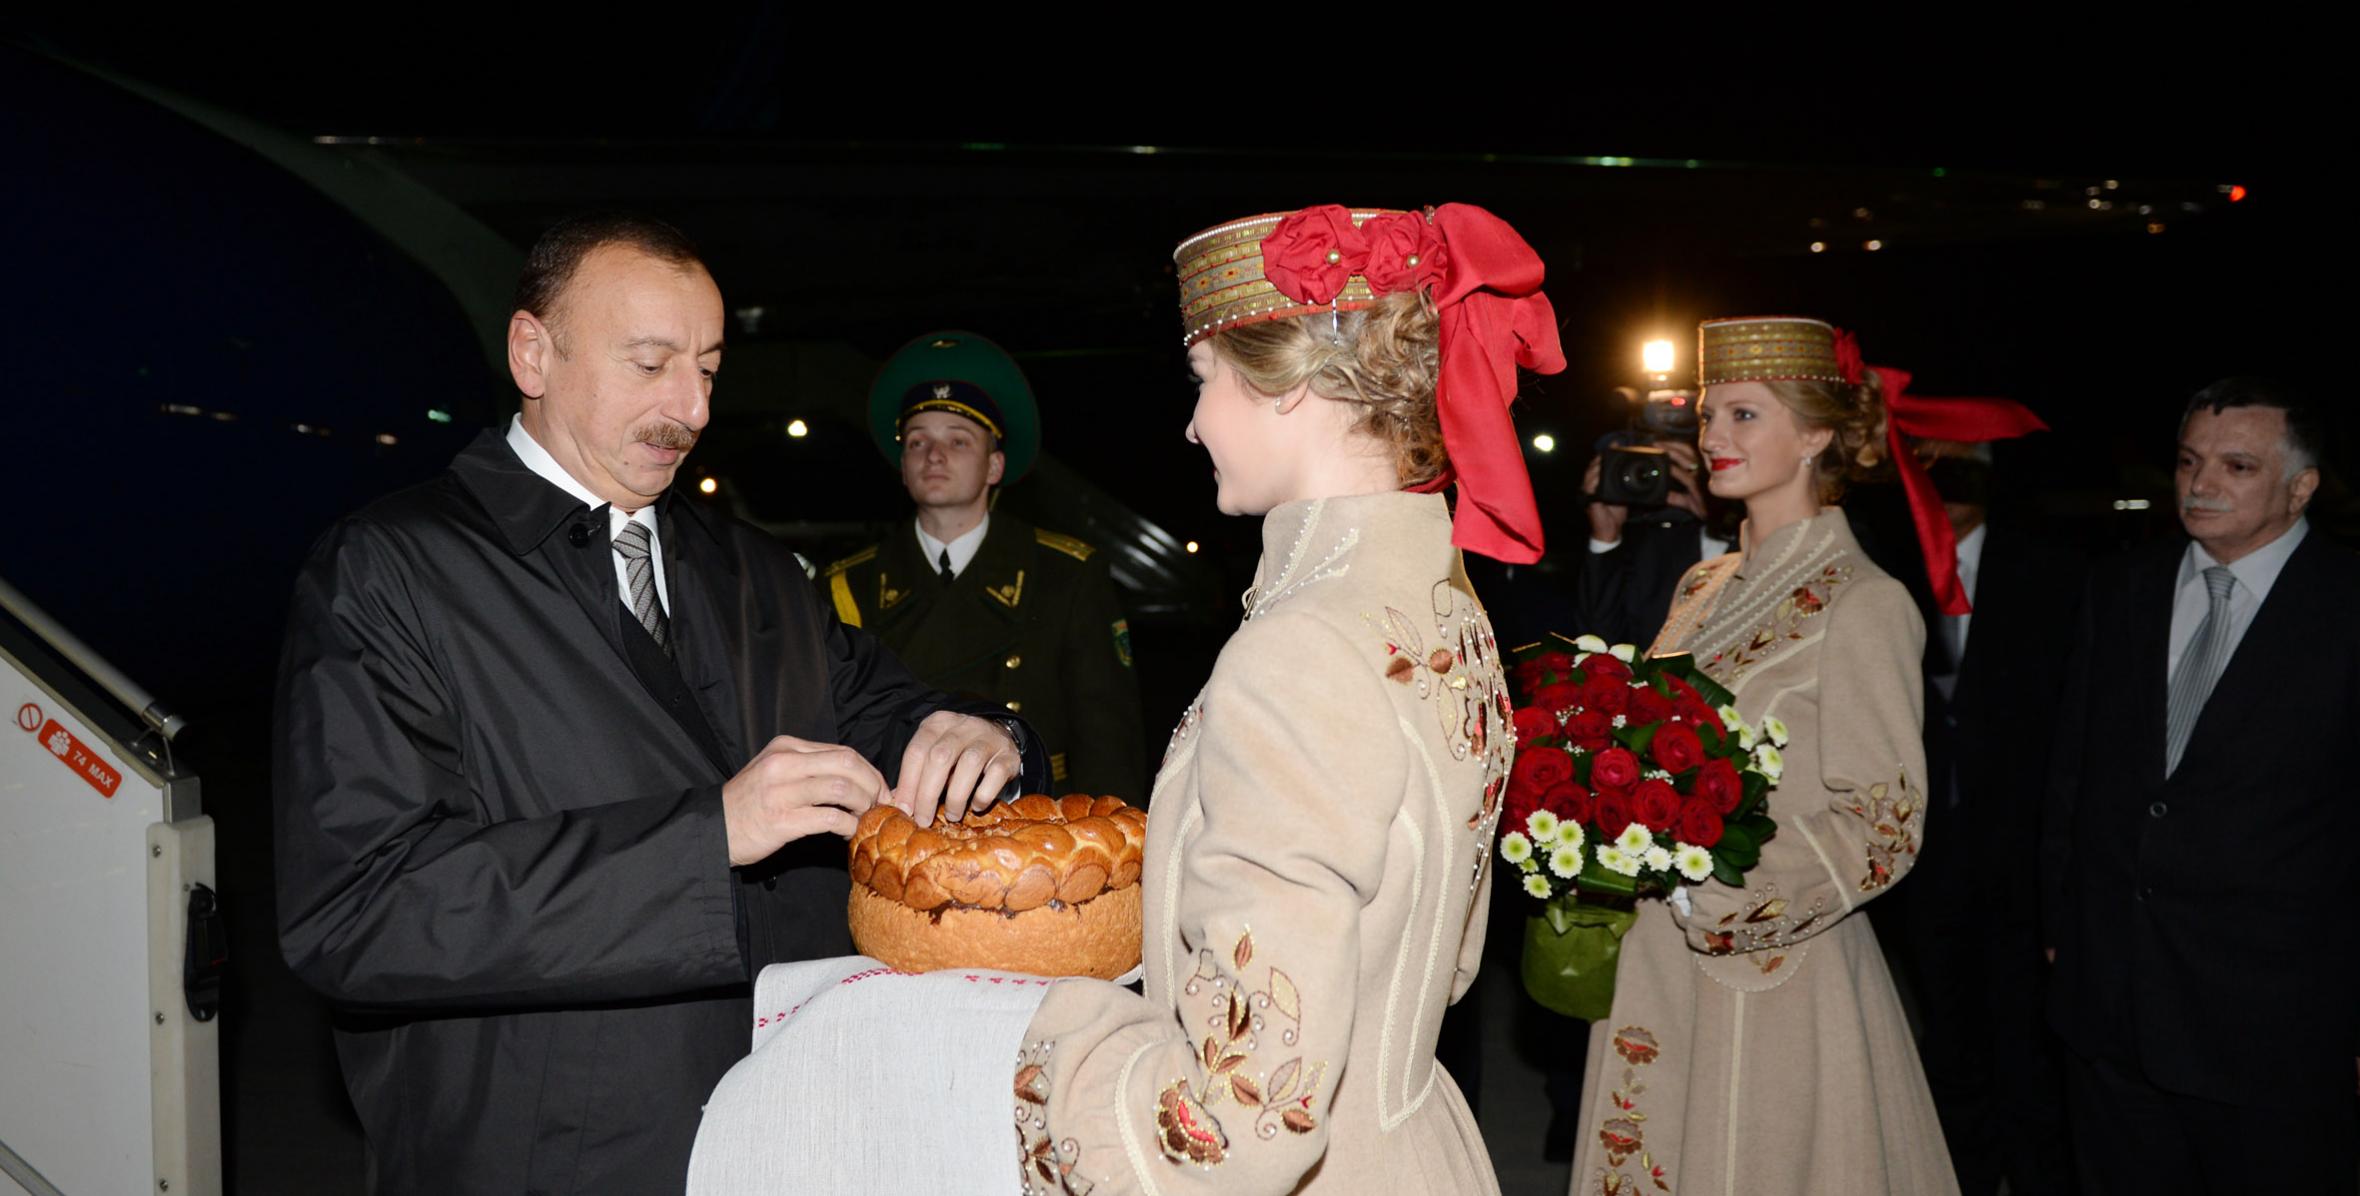 Ilham Aliyev arrived in Minsk on a visit